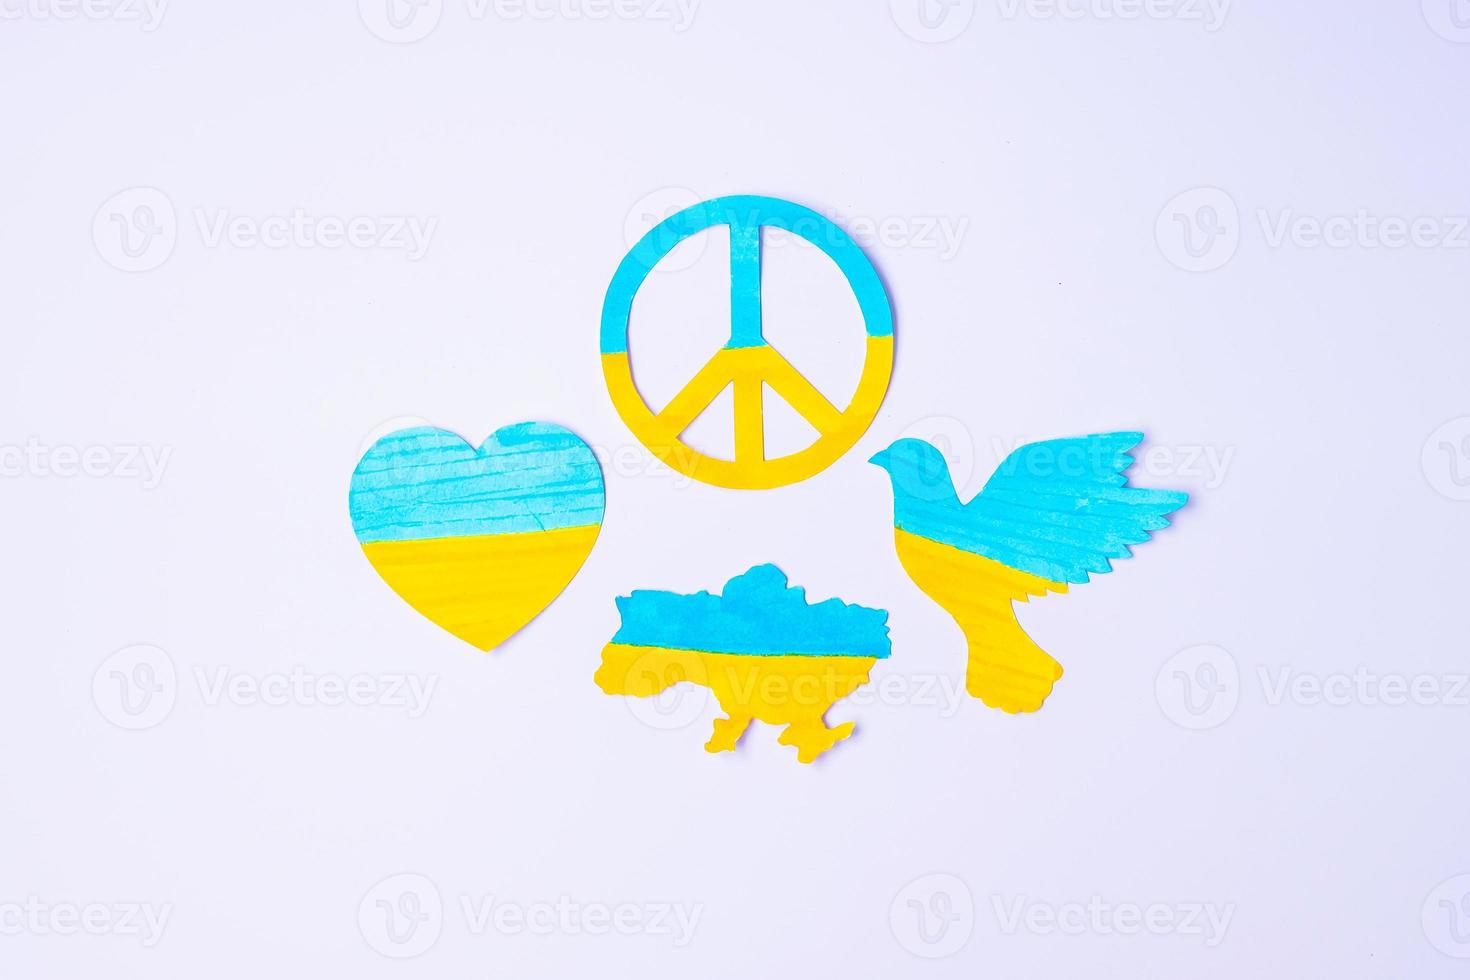 unterstützung für die ukraine im krieg mit russland, symbol des friedens mit der flagge der ukraine. bete, kein krieg, stoppe den krieg, stehe zur ukraine und zur nuklearen abrüstung foto